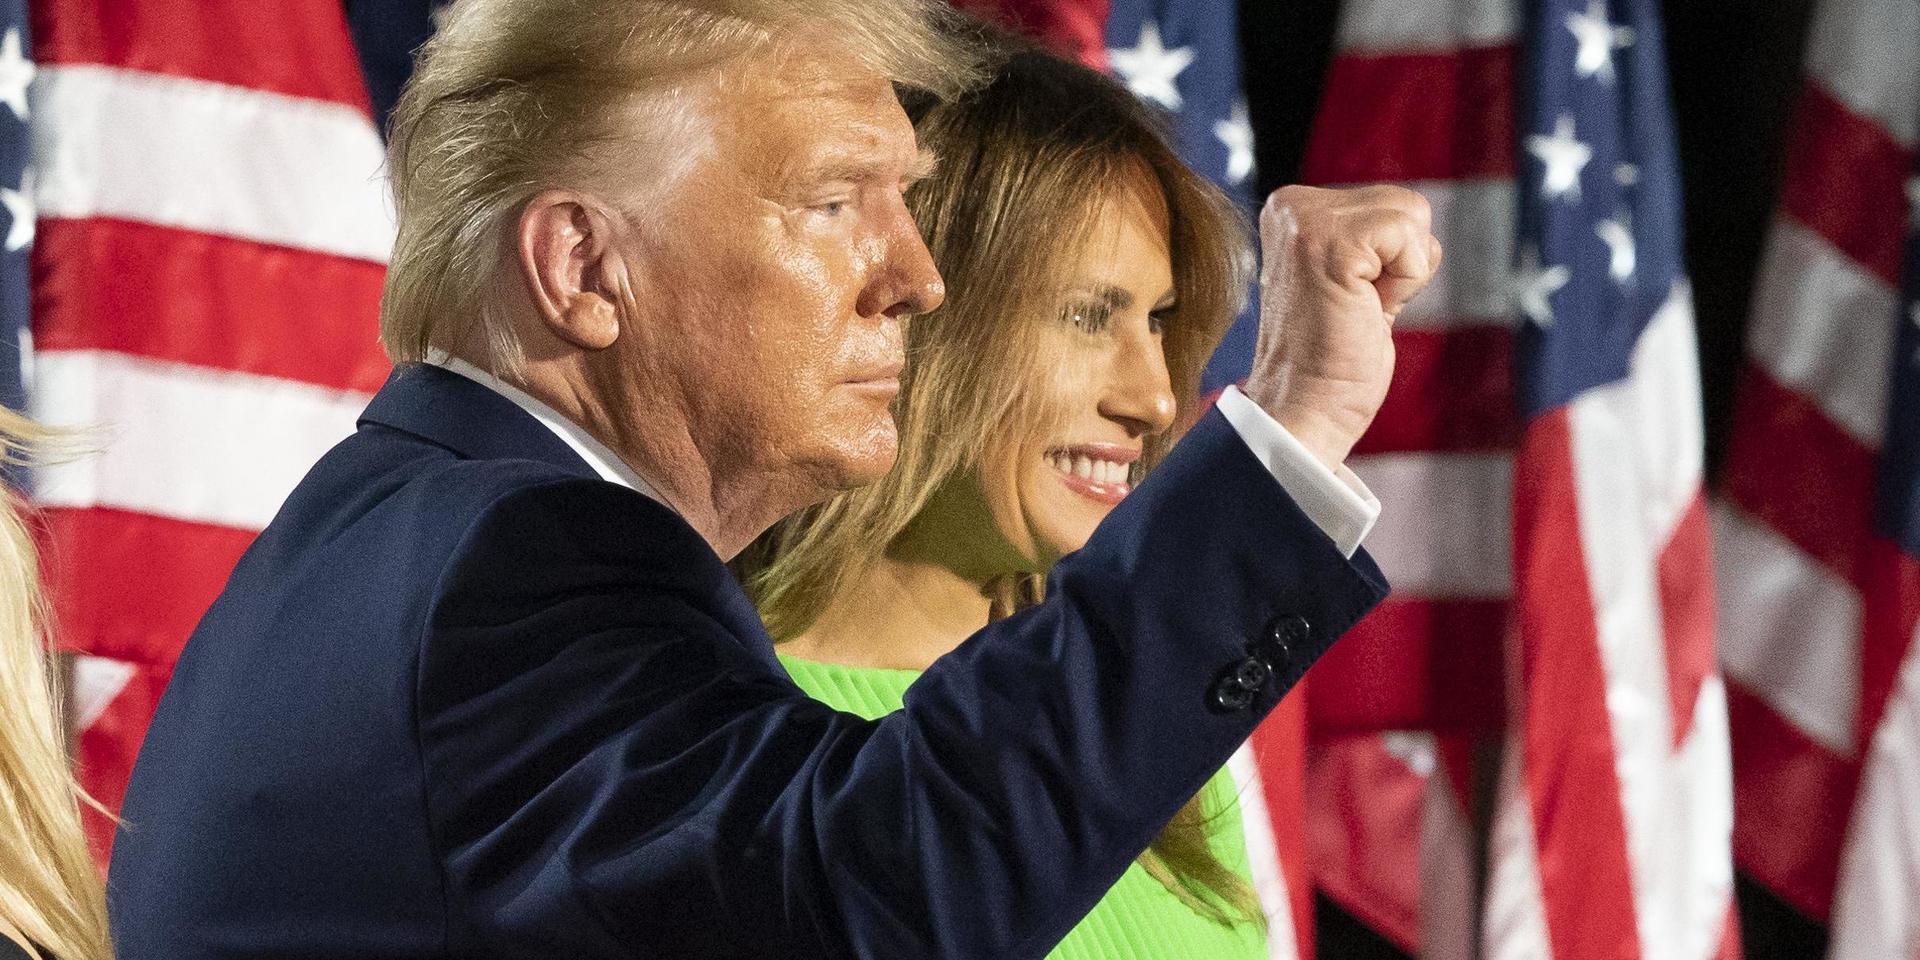 President Donald Trump, här med frun Melania, höjer näven efter sitt avslutningstal vid det republikanska konventet. Ett konvent som till stor del handlade om lag och ordning, skriver GP:s Britt-Marie Mattsson.